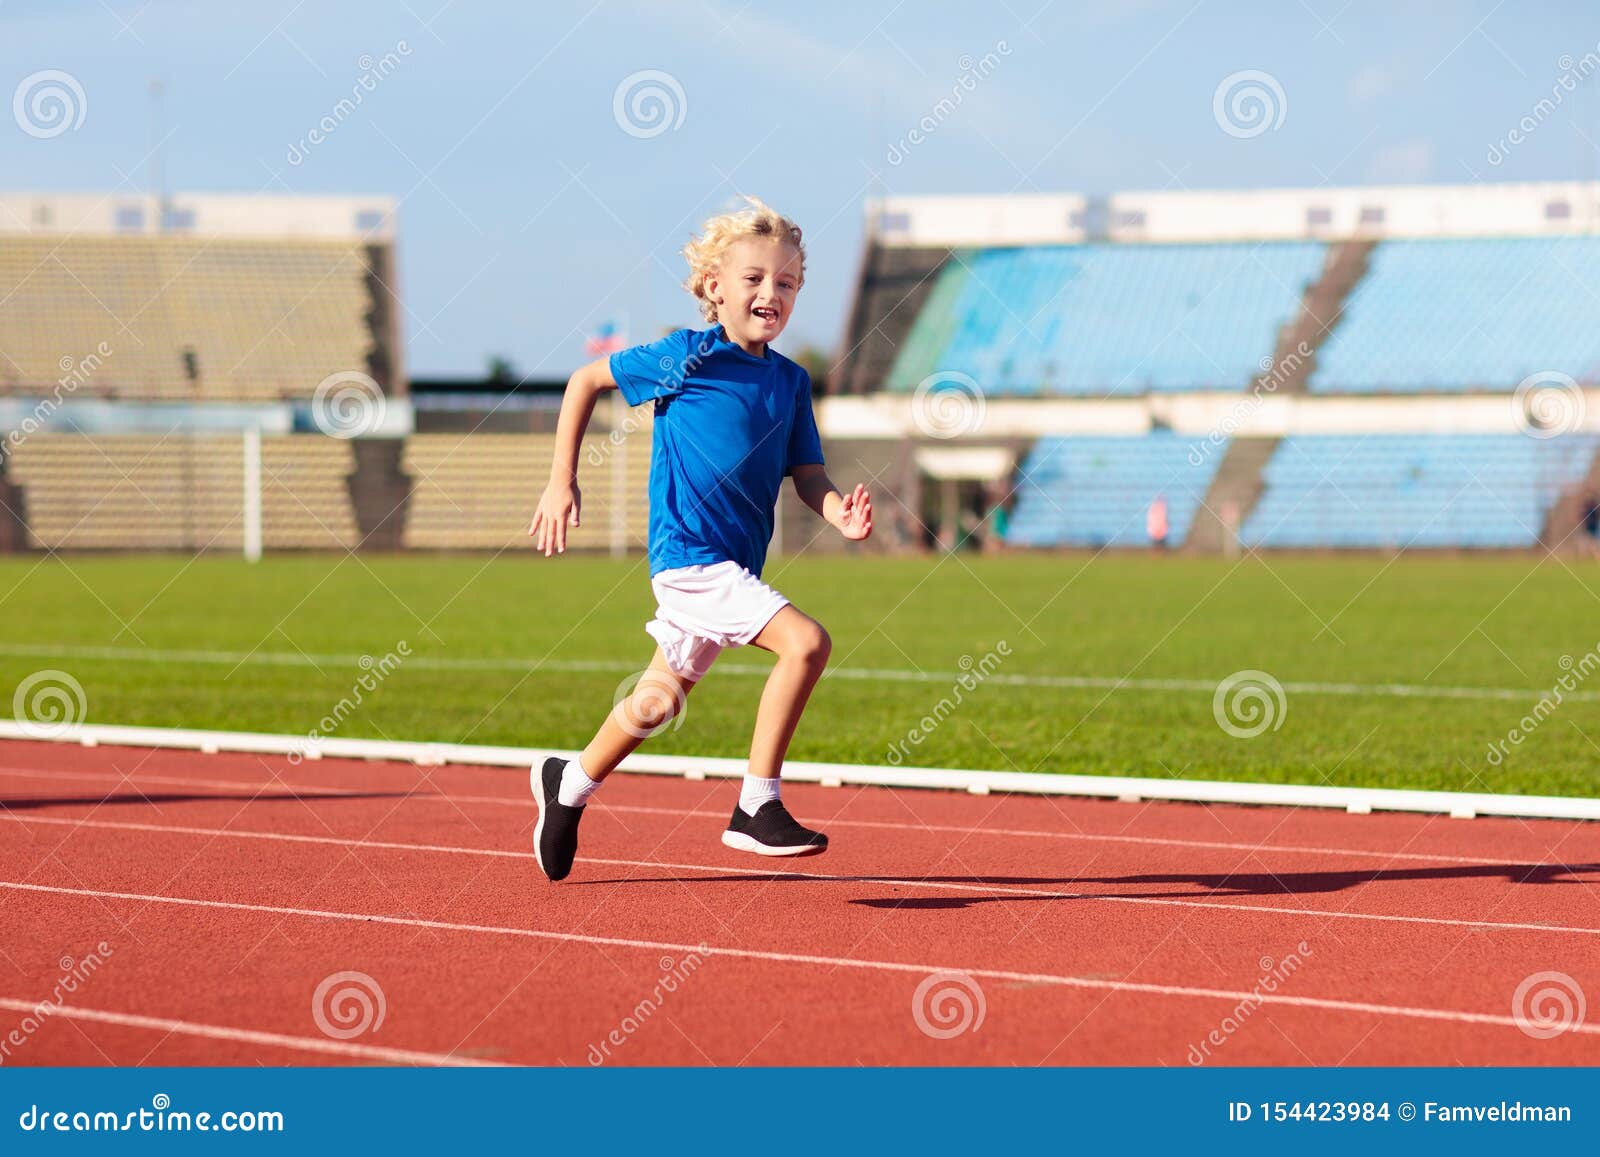 child running in stadium. kids run. healthy sport